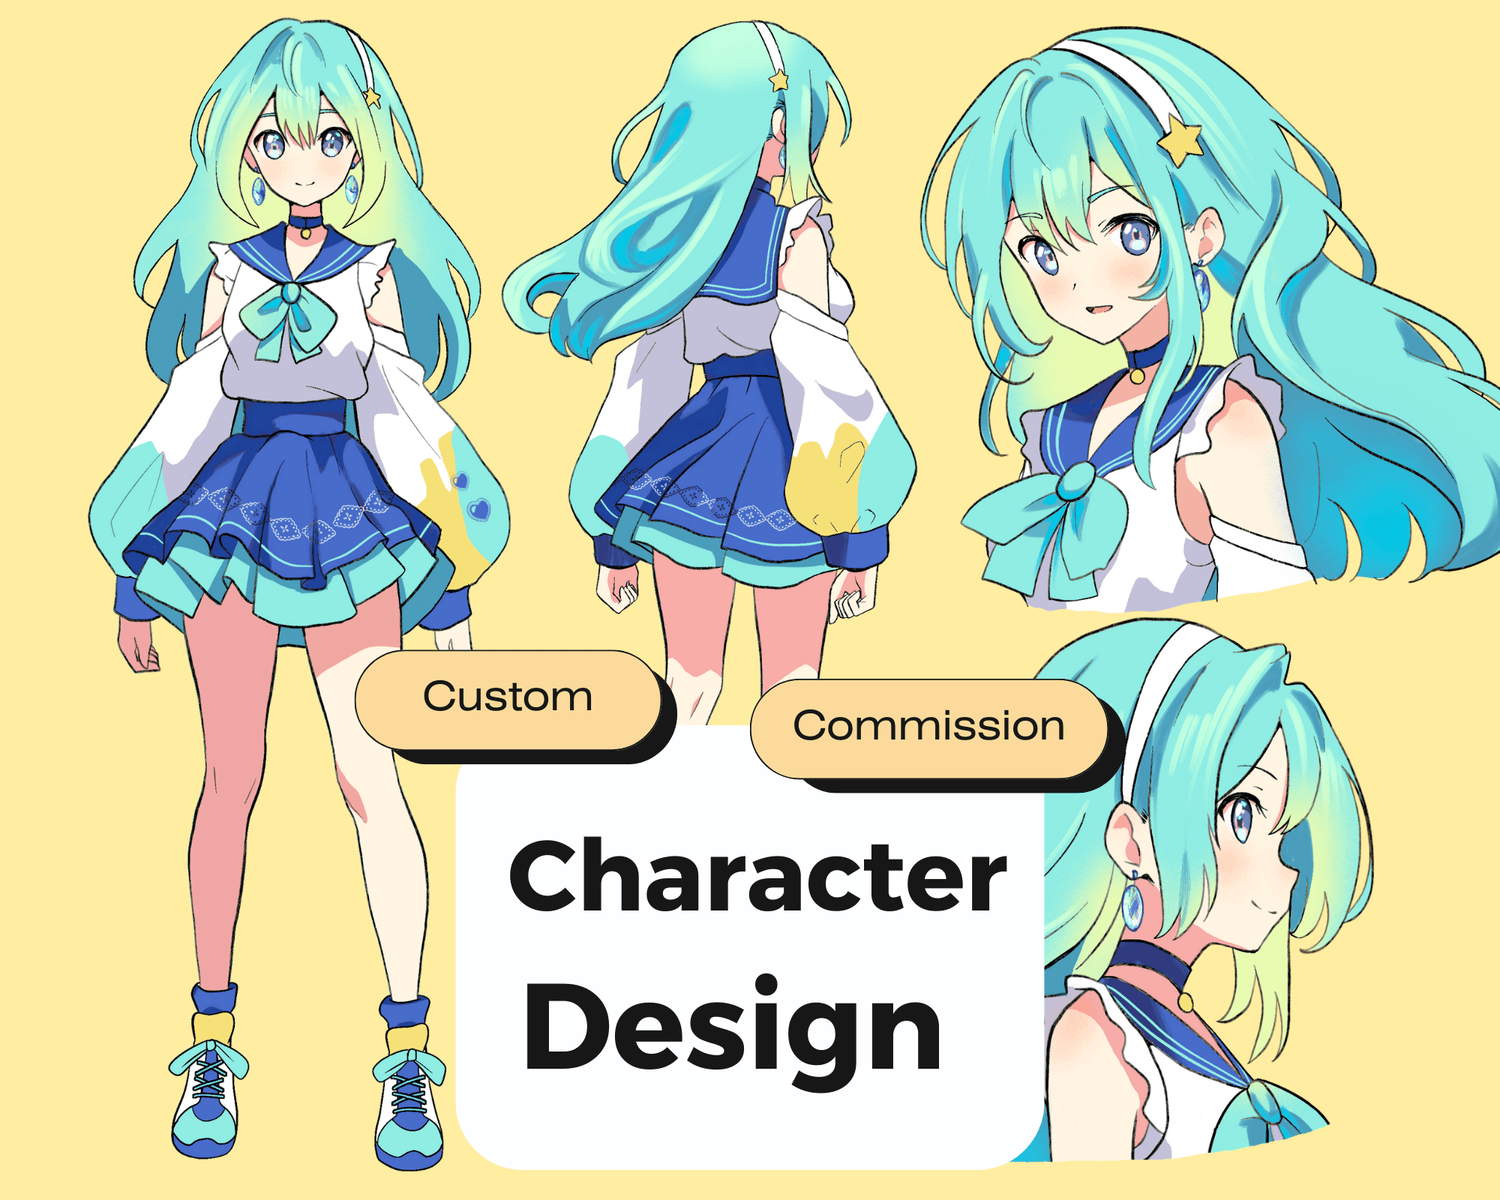 Cute Anime Character Design vTuber Commission - Pngtuber Streamer 2D Illustration - Cozy Brushery